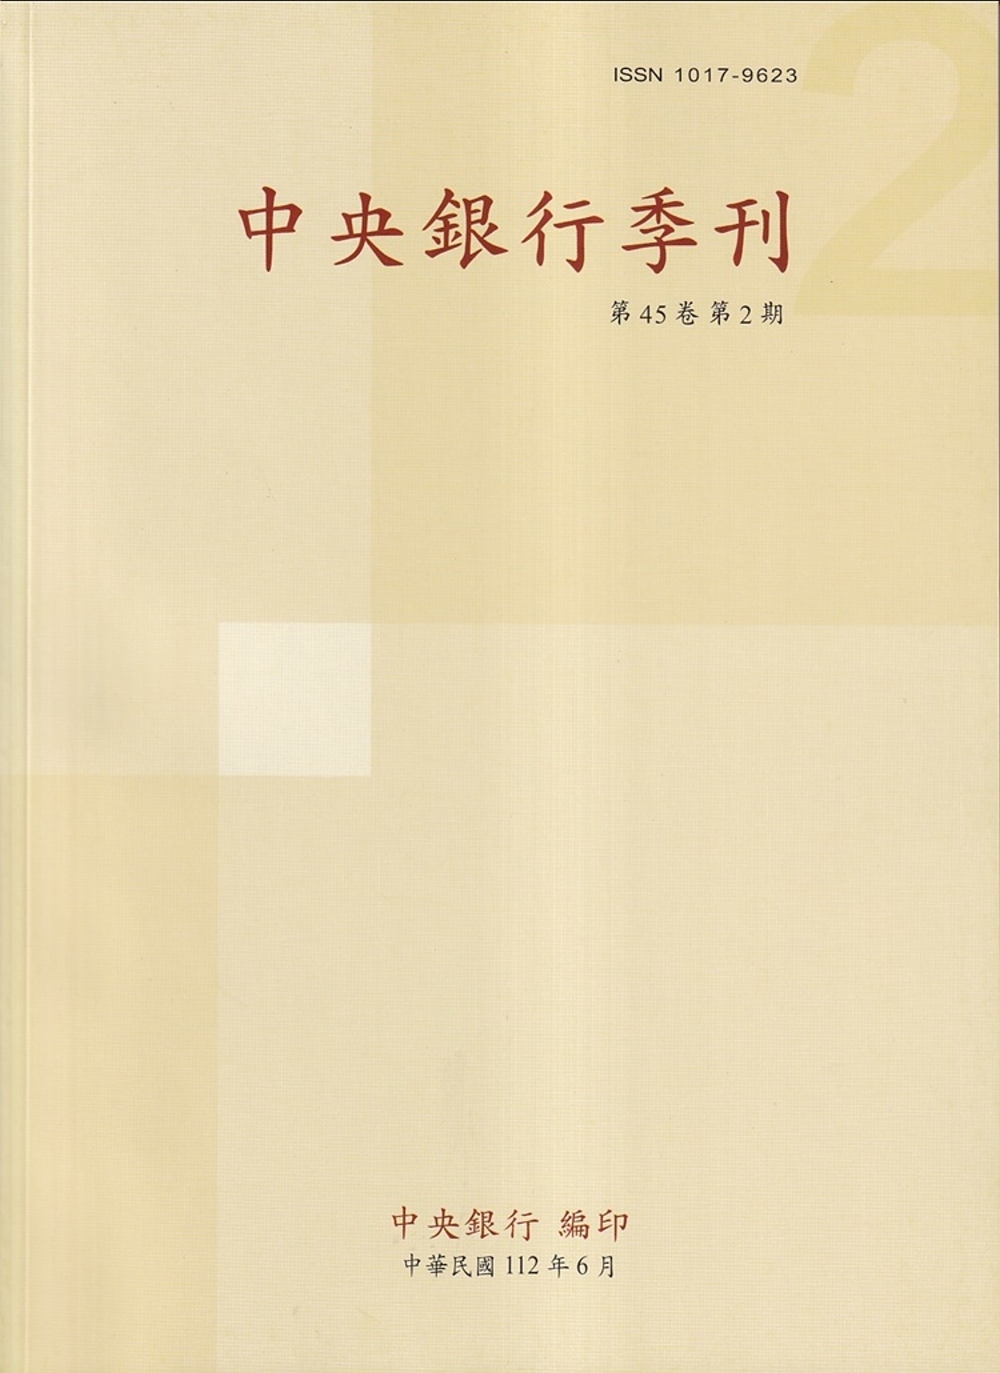 中央銀行季刊45卷2期(112.06)